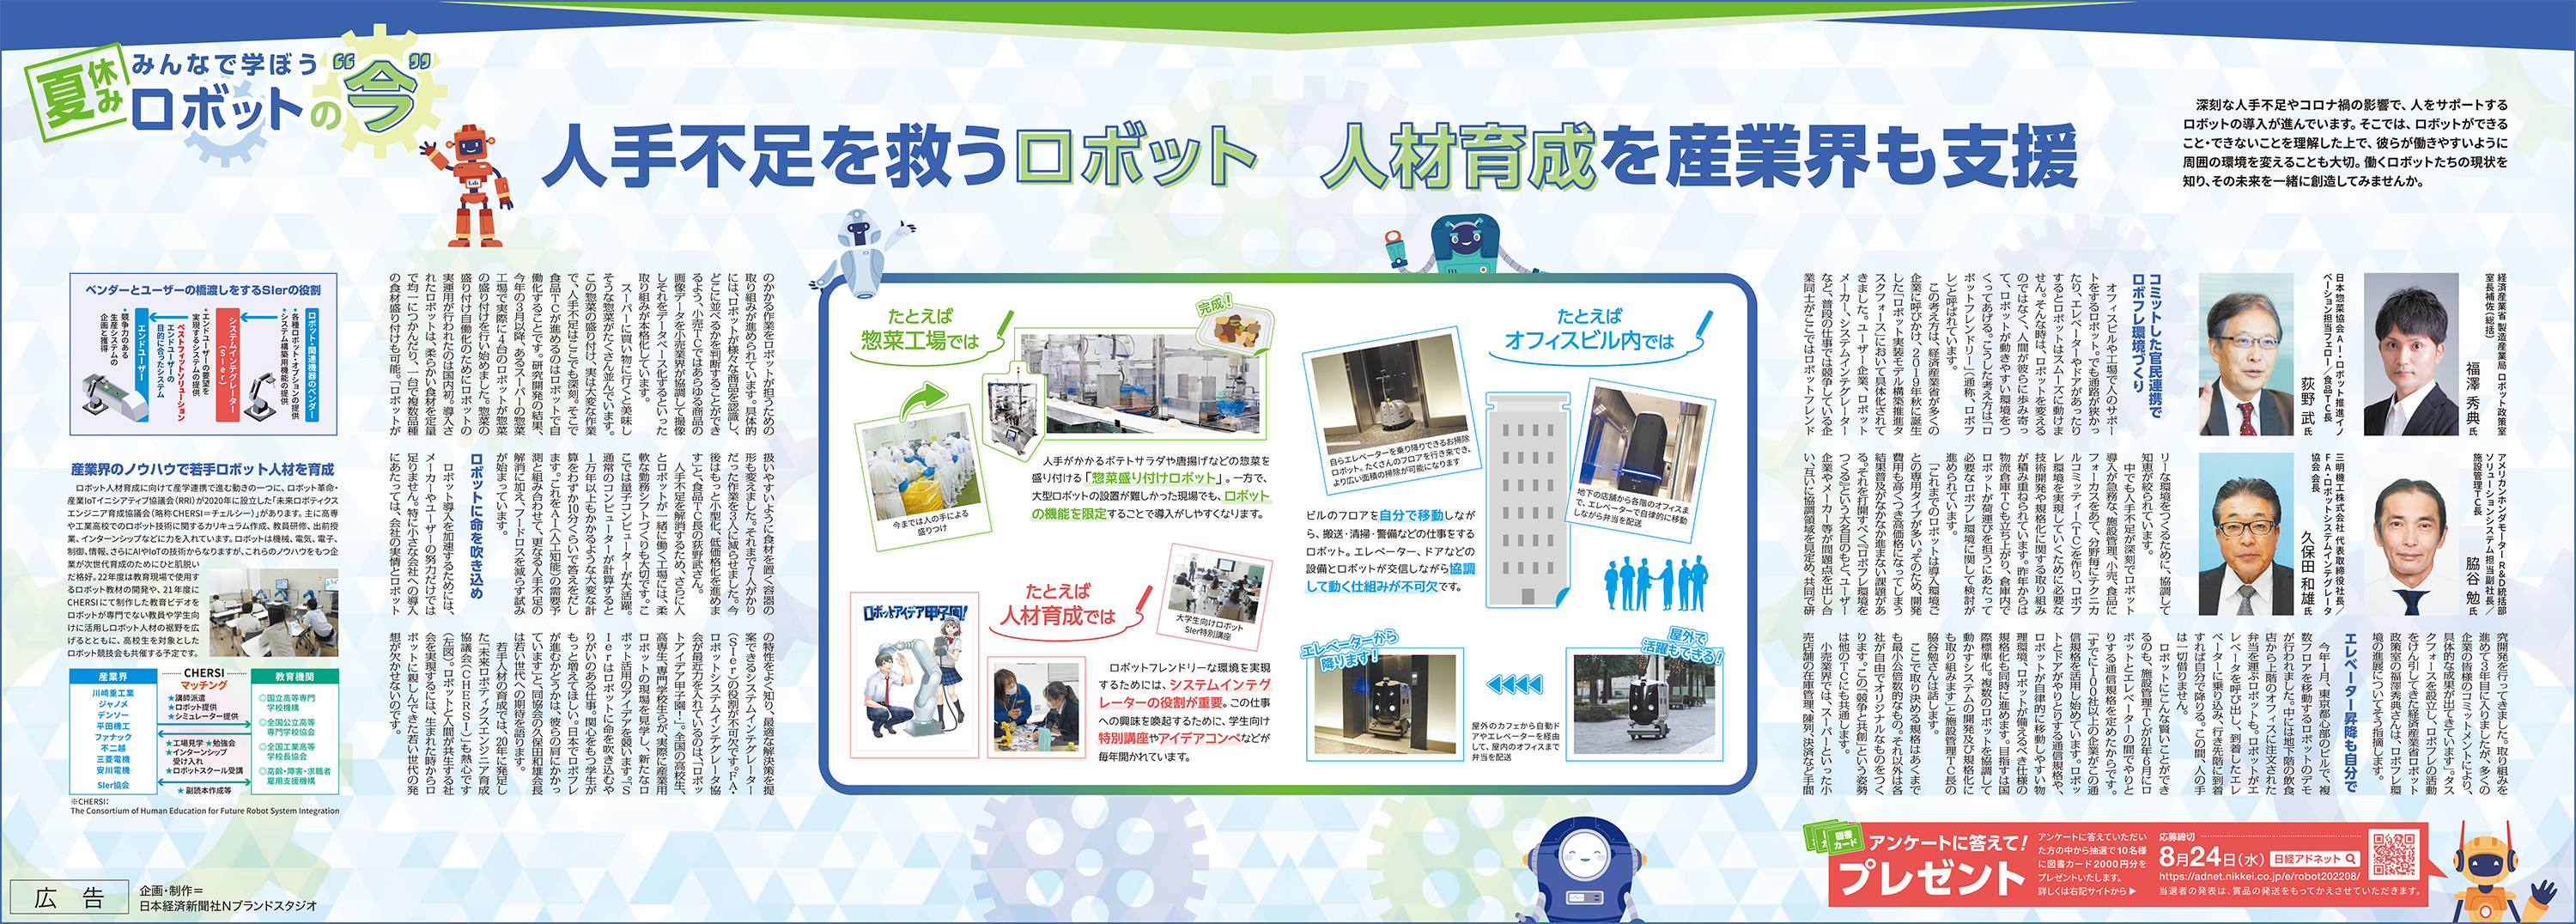 日本経済新聞 8月15日朝刊 「Robotics with world～ロボットと協働する社会へ」の特集に掲載頂きました。